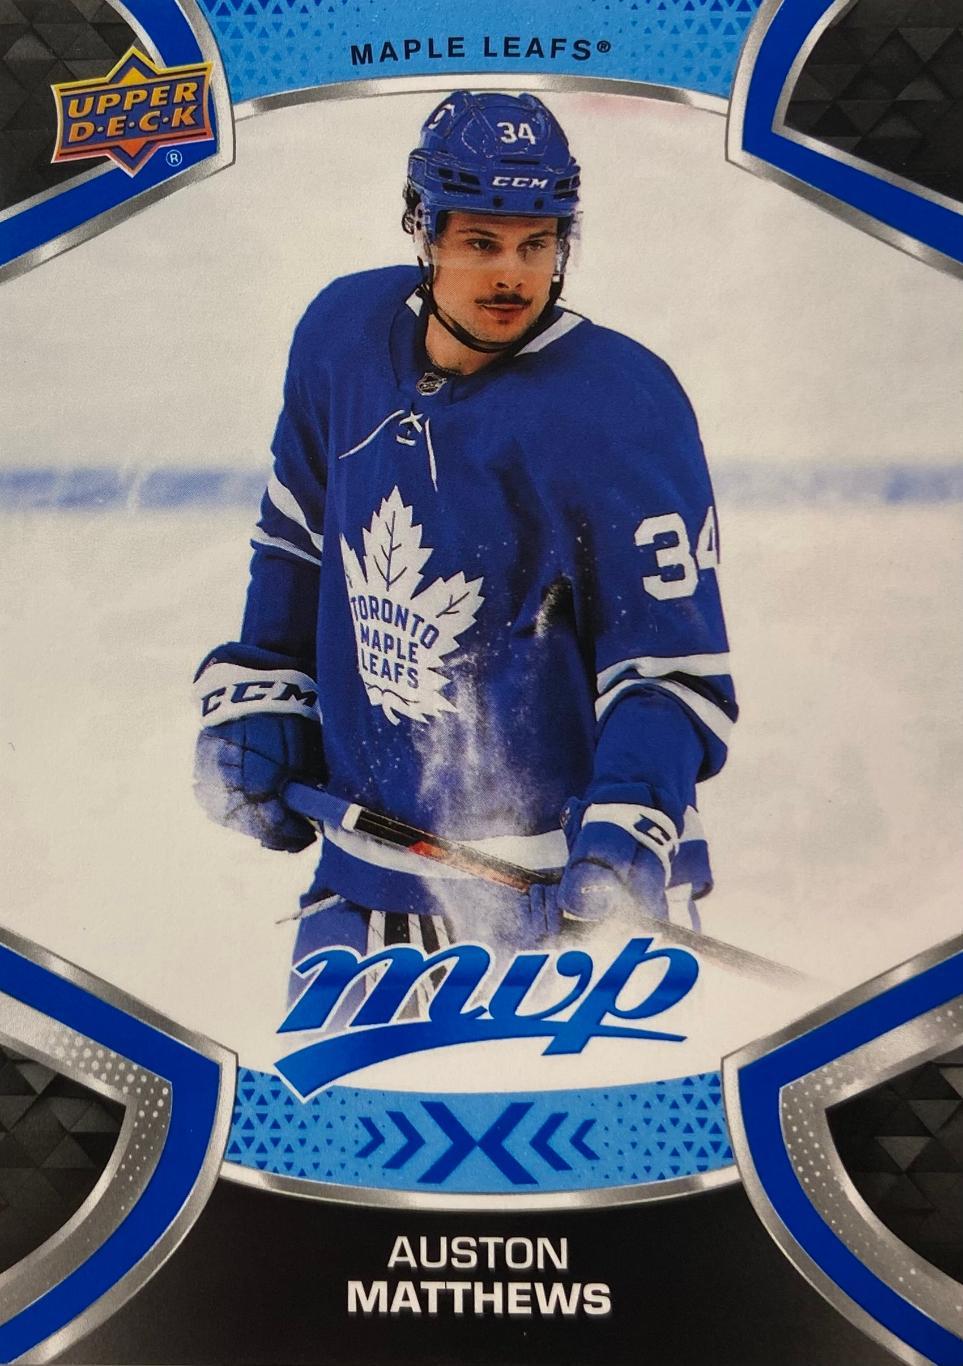 Хоккей. Карточка Auston Matthews - Остон Мэттьюс Toronto Maple Leafs НХЛ/NHL